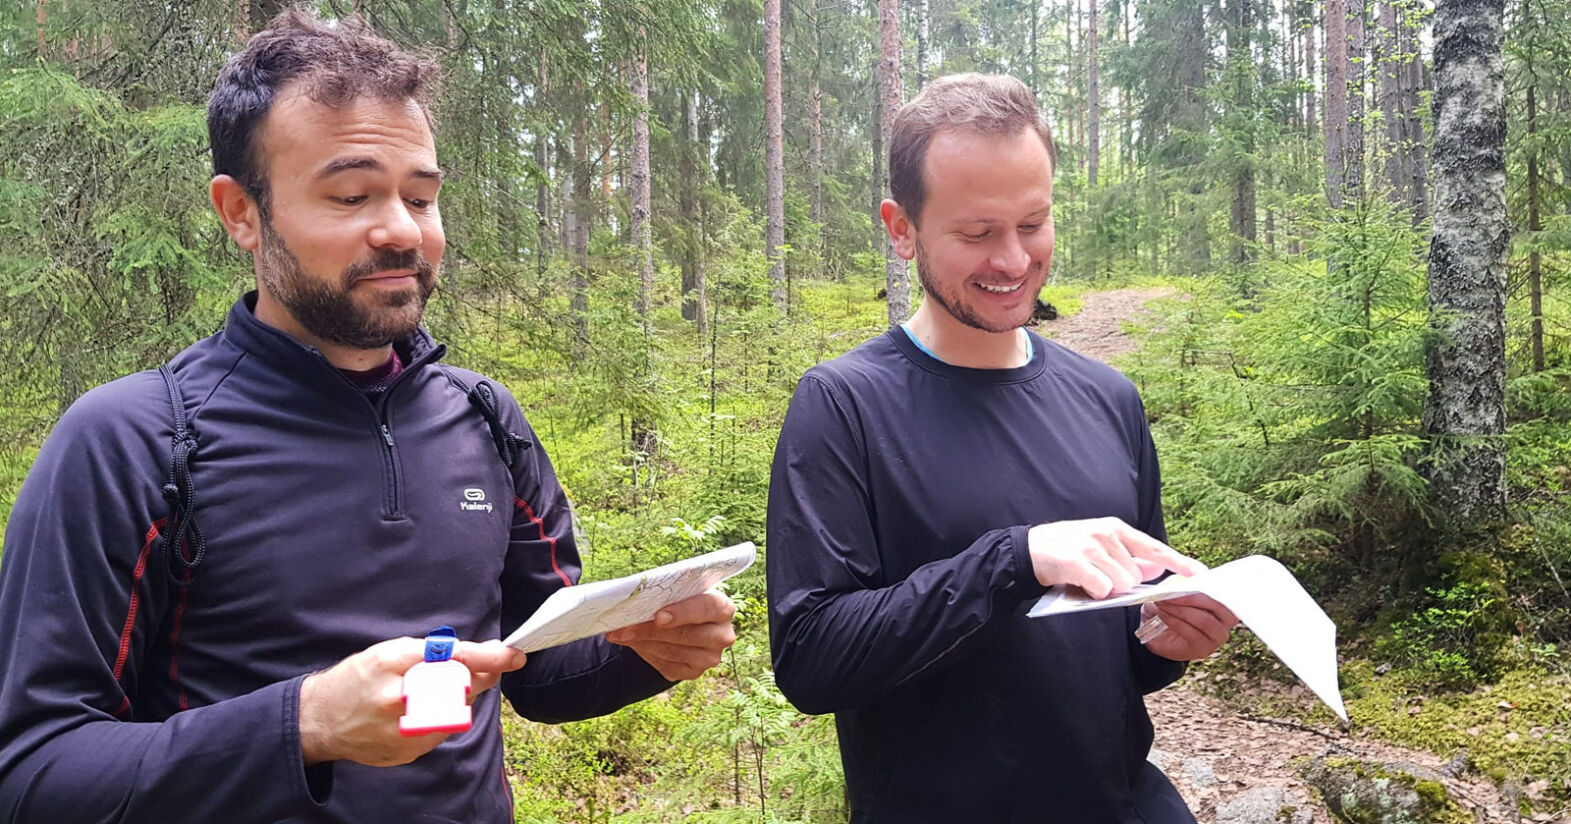 2 individuals orienteering in Finland